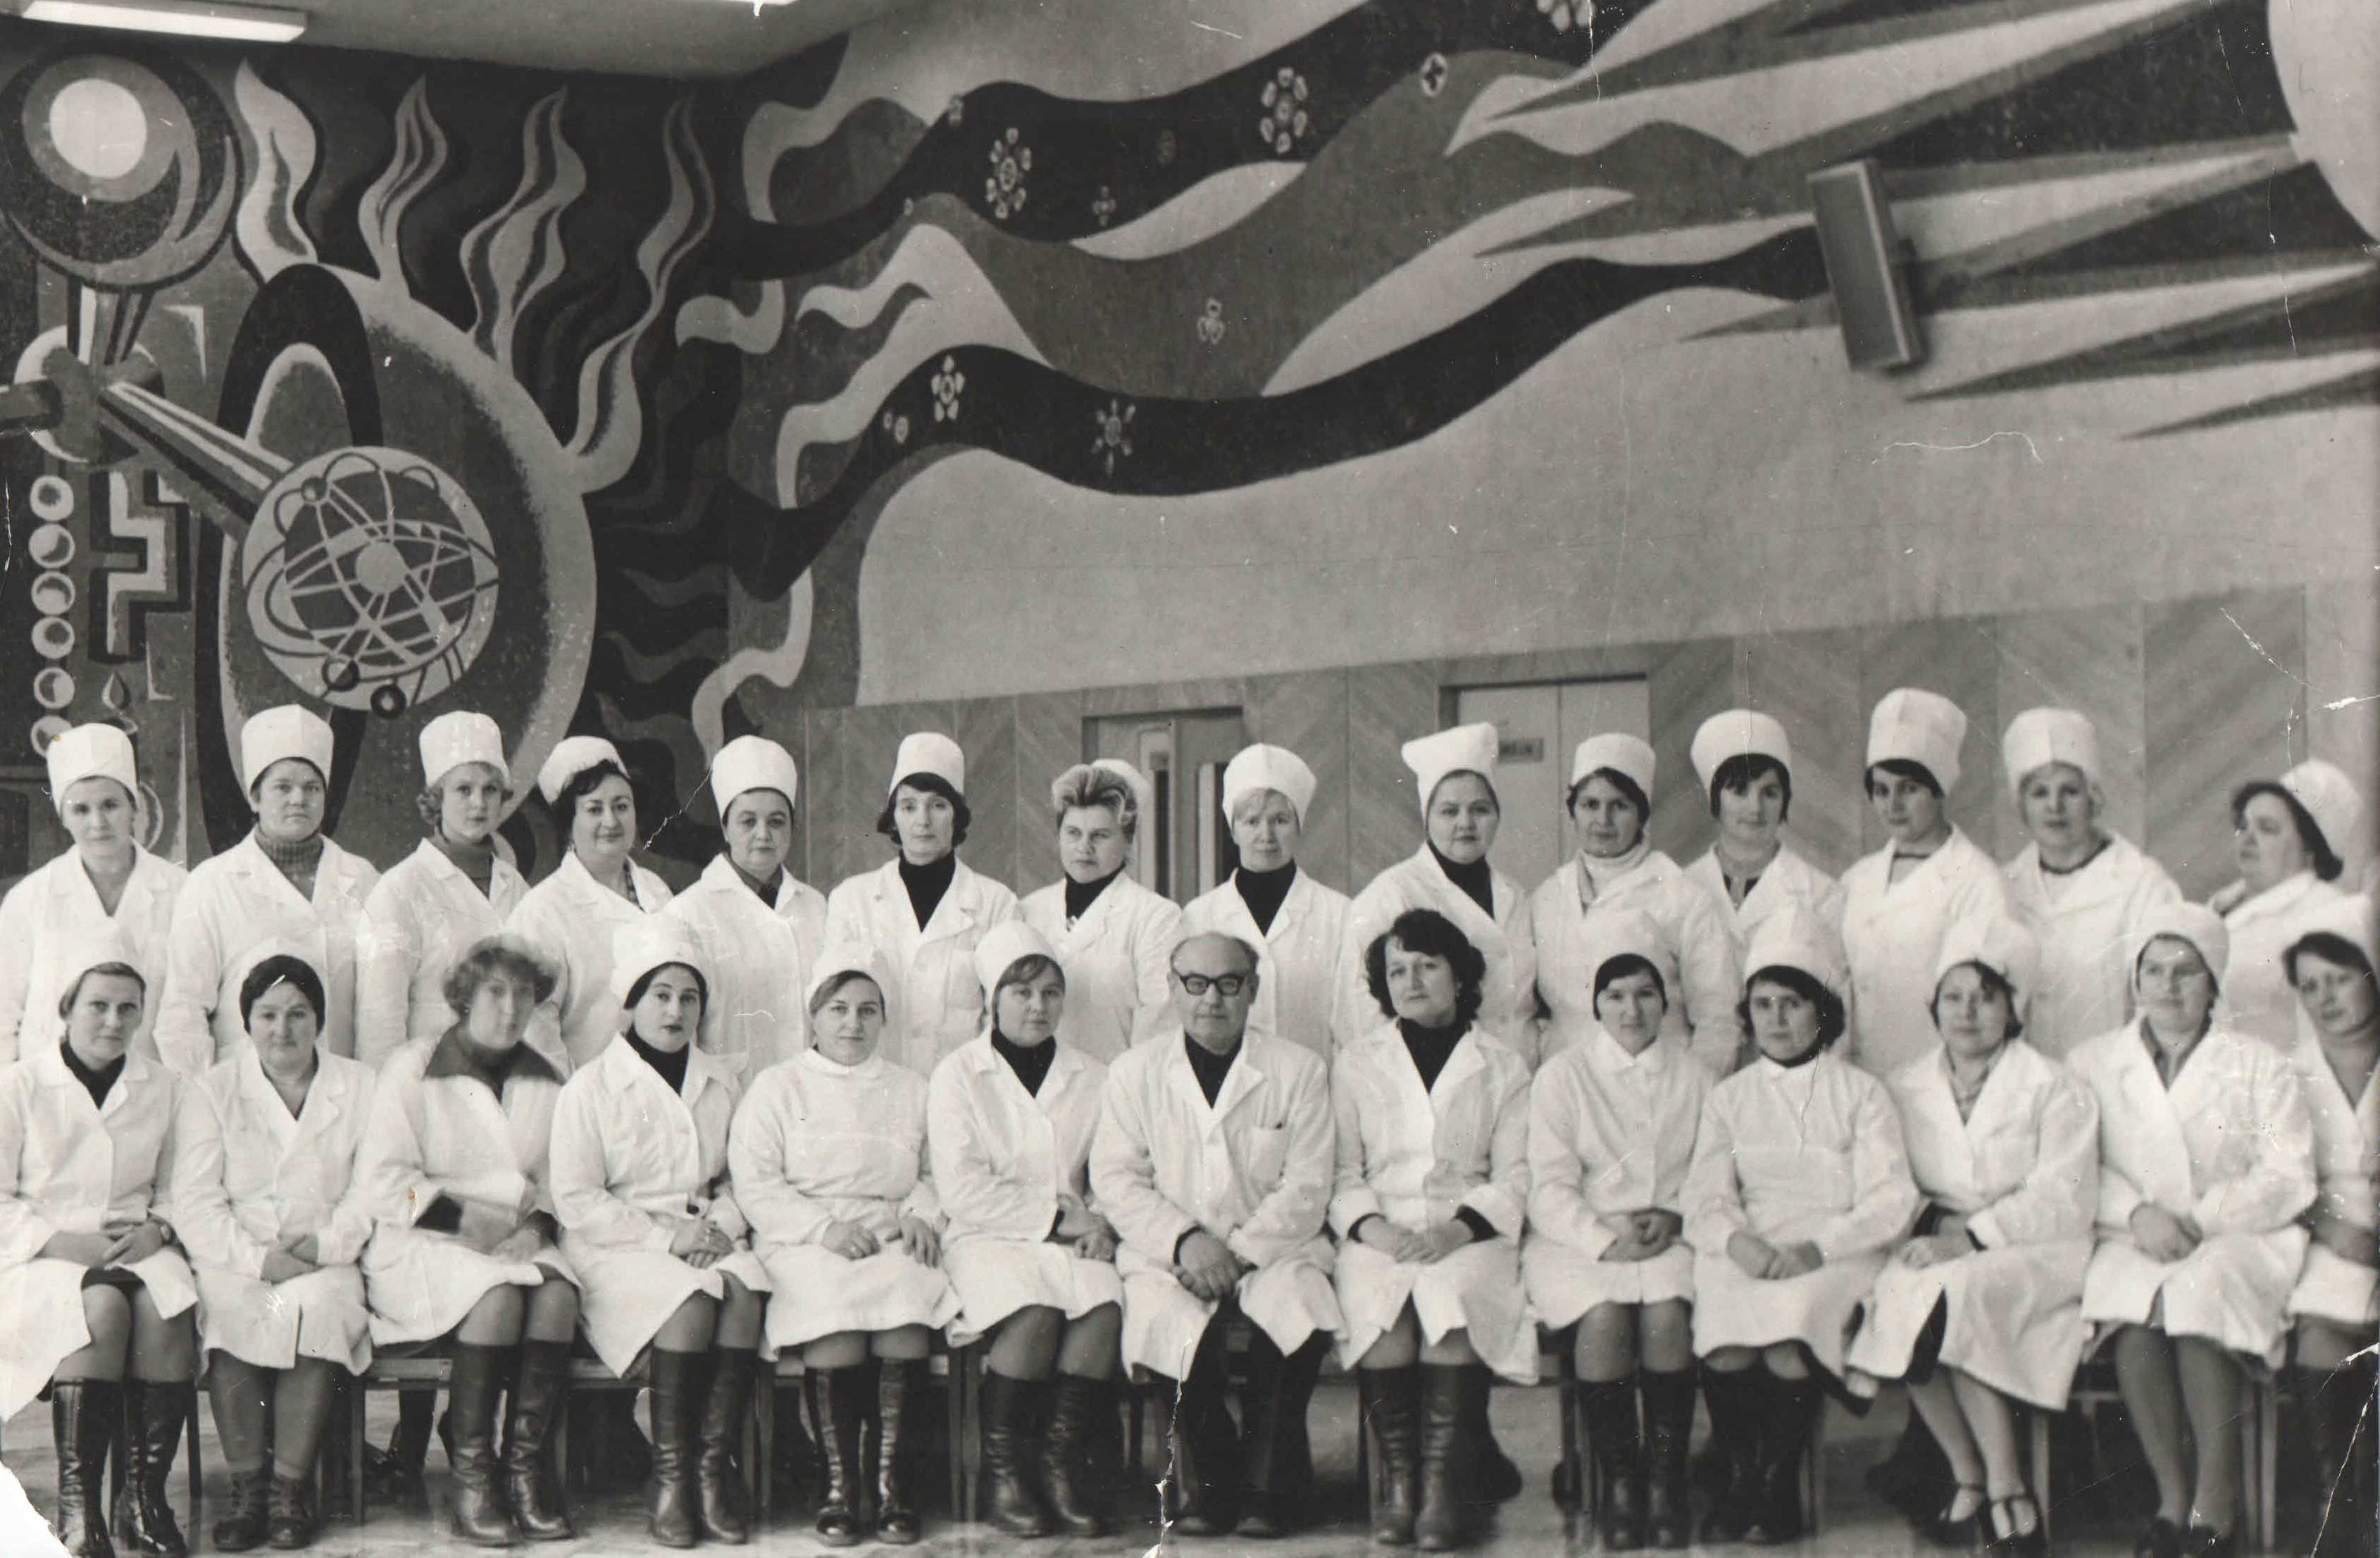  	Старшие медицинские сестры, 1994 год (6-я справа – Карпенко Эльвира Иосифовна, главная медсестра с 1979 по 1998 годы)